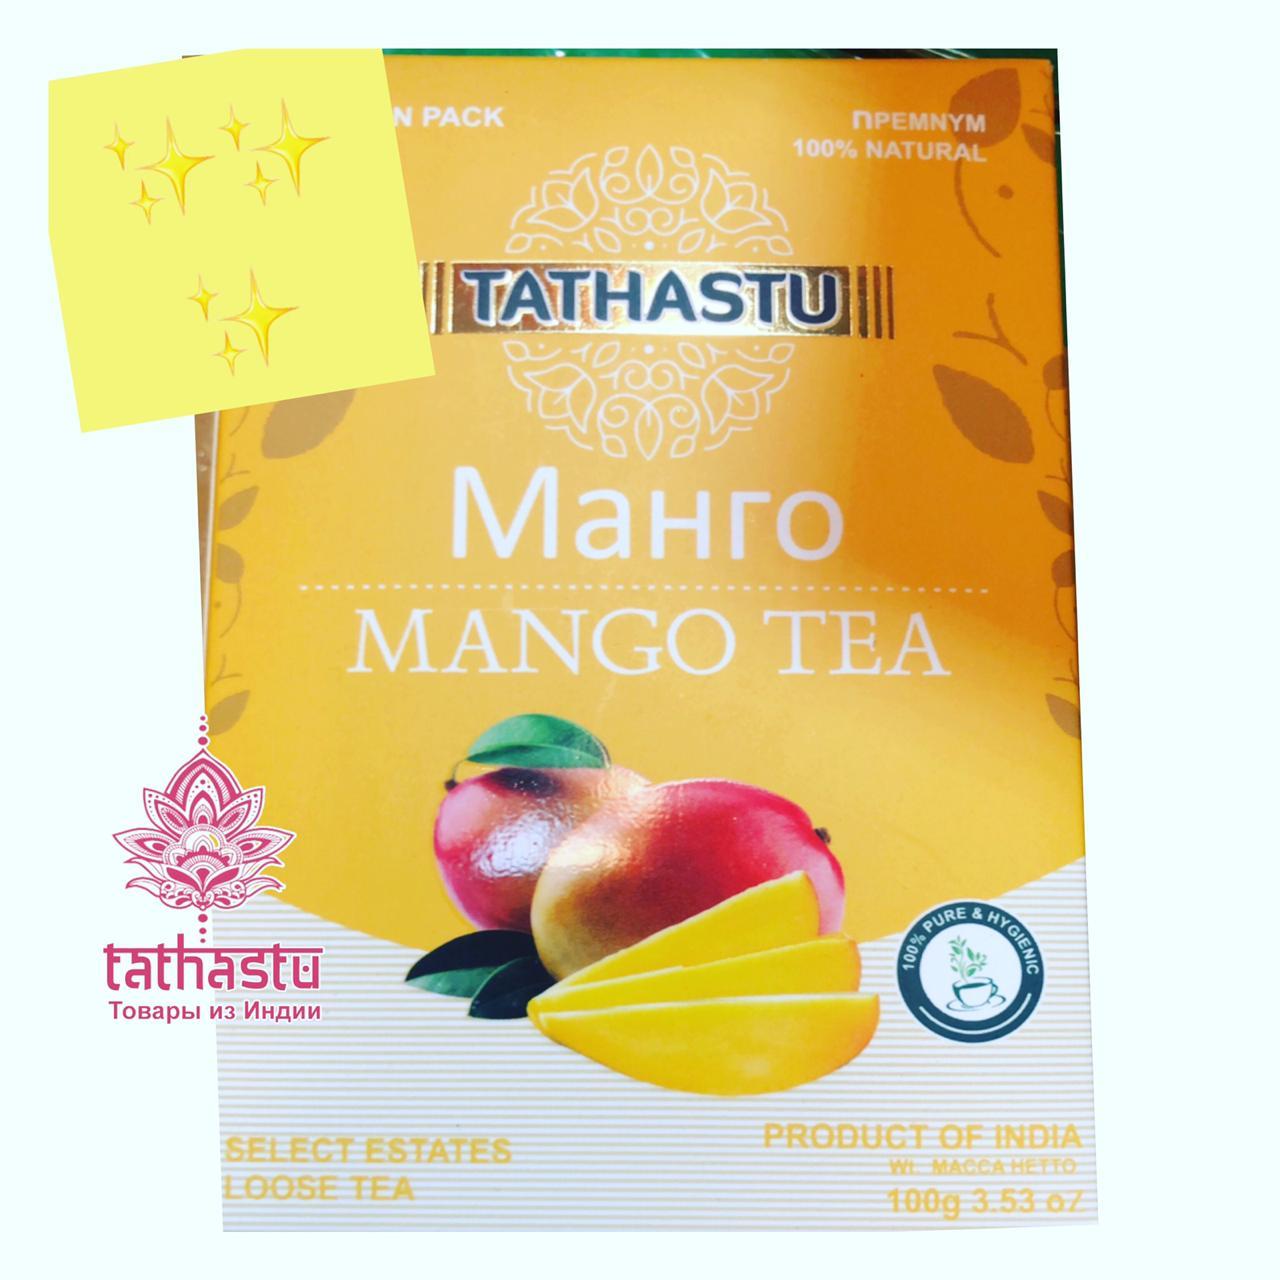 Tathastu Манговый чай. Tathastu товары и индии